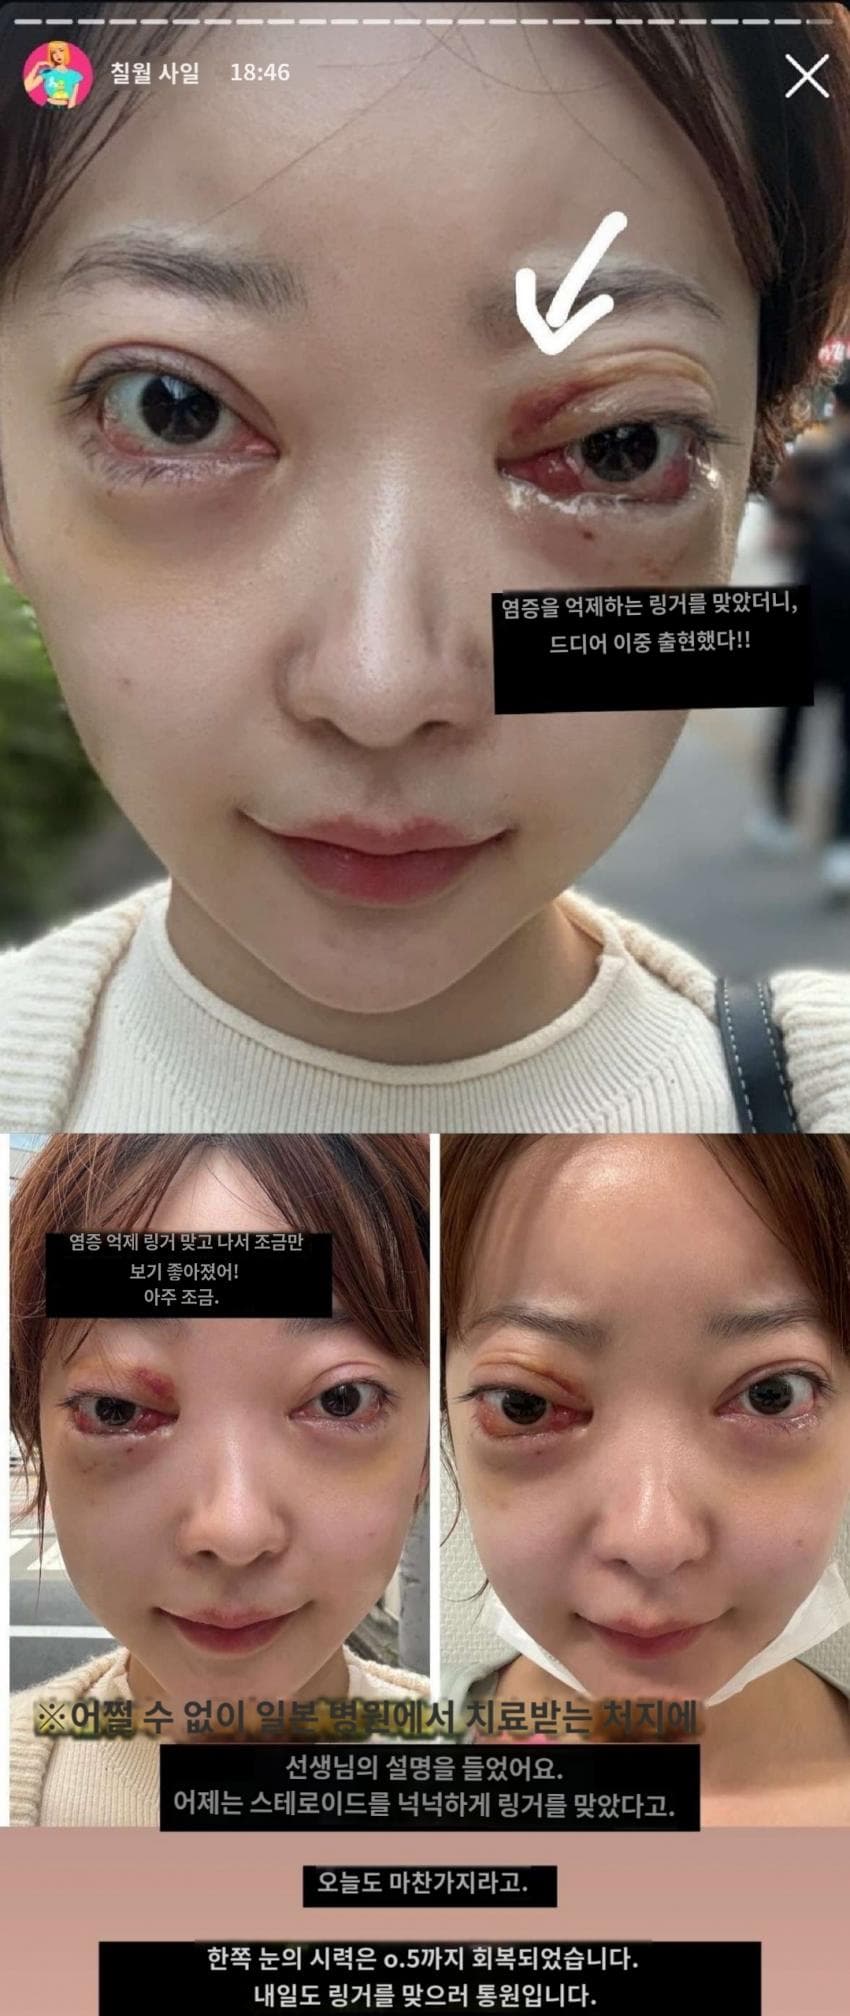 1720328897-1.jpg 약혐)한국에서 성형수술후 부작용,대응 때문에 병원폭로한 일본녀